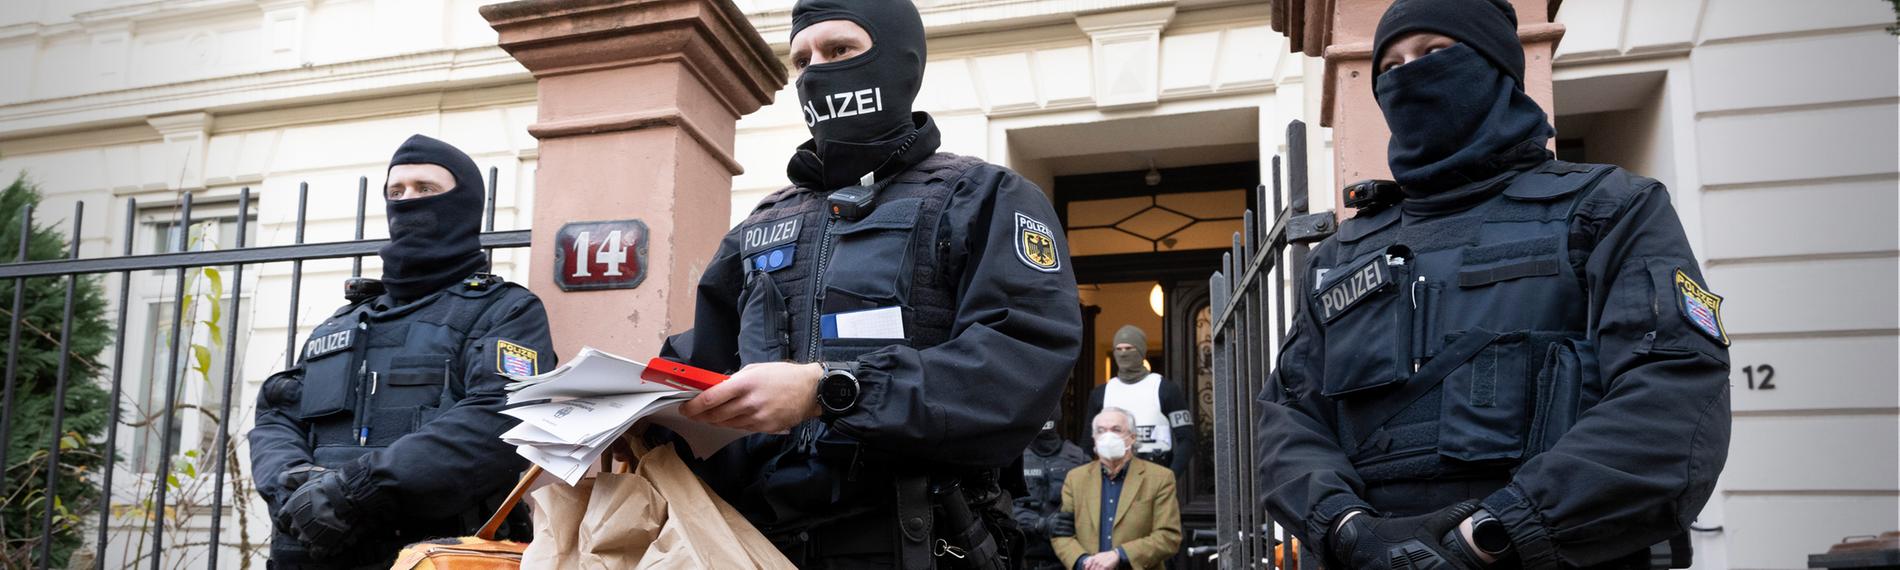 Archiv: Bei einer Razzia gegen sogenannte "Reichsbürger" führen vermummte Polizisten, nach der Durchsuchung eines Hauses Heinrich XIII Prinz Reuß zu einem Polizeifahrzeug.